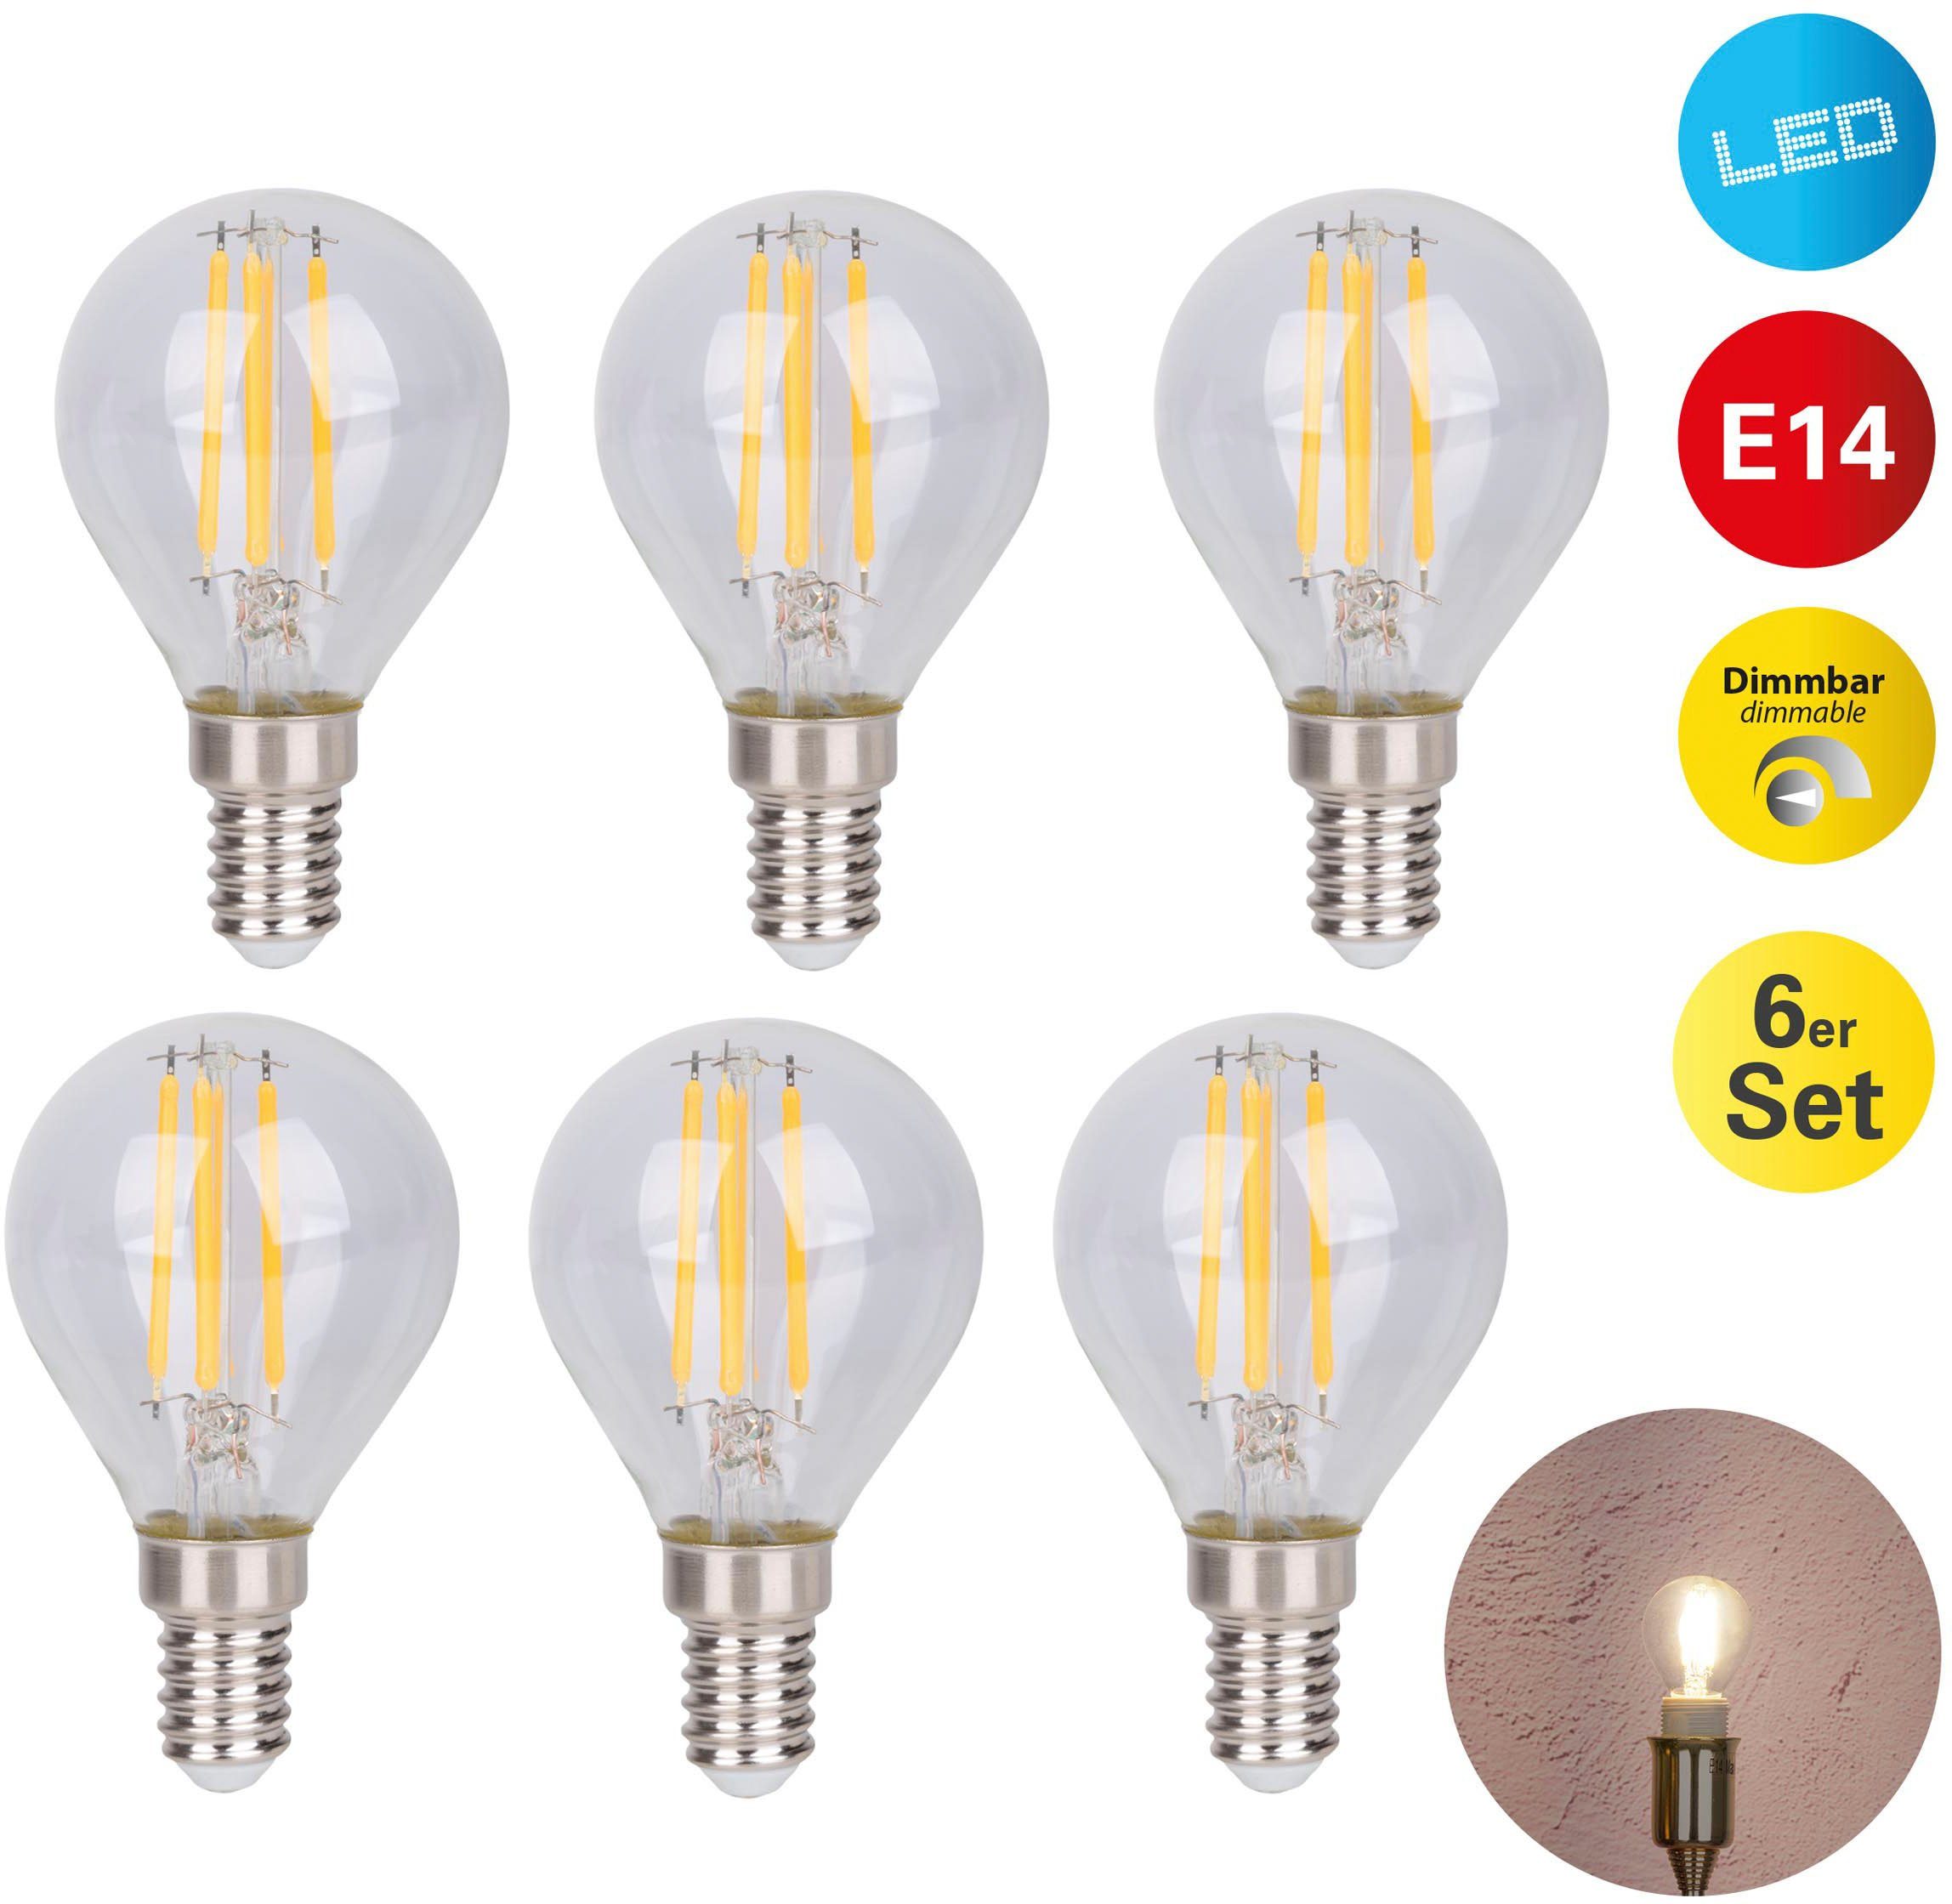 Strahlende Hochwertigkeit näve LED-Leuchtmittel 6er Set, 6 St., Daffy, E14, birnenform Warmweiß